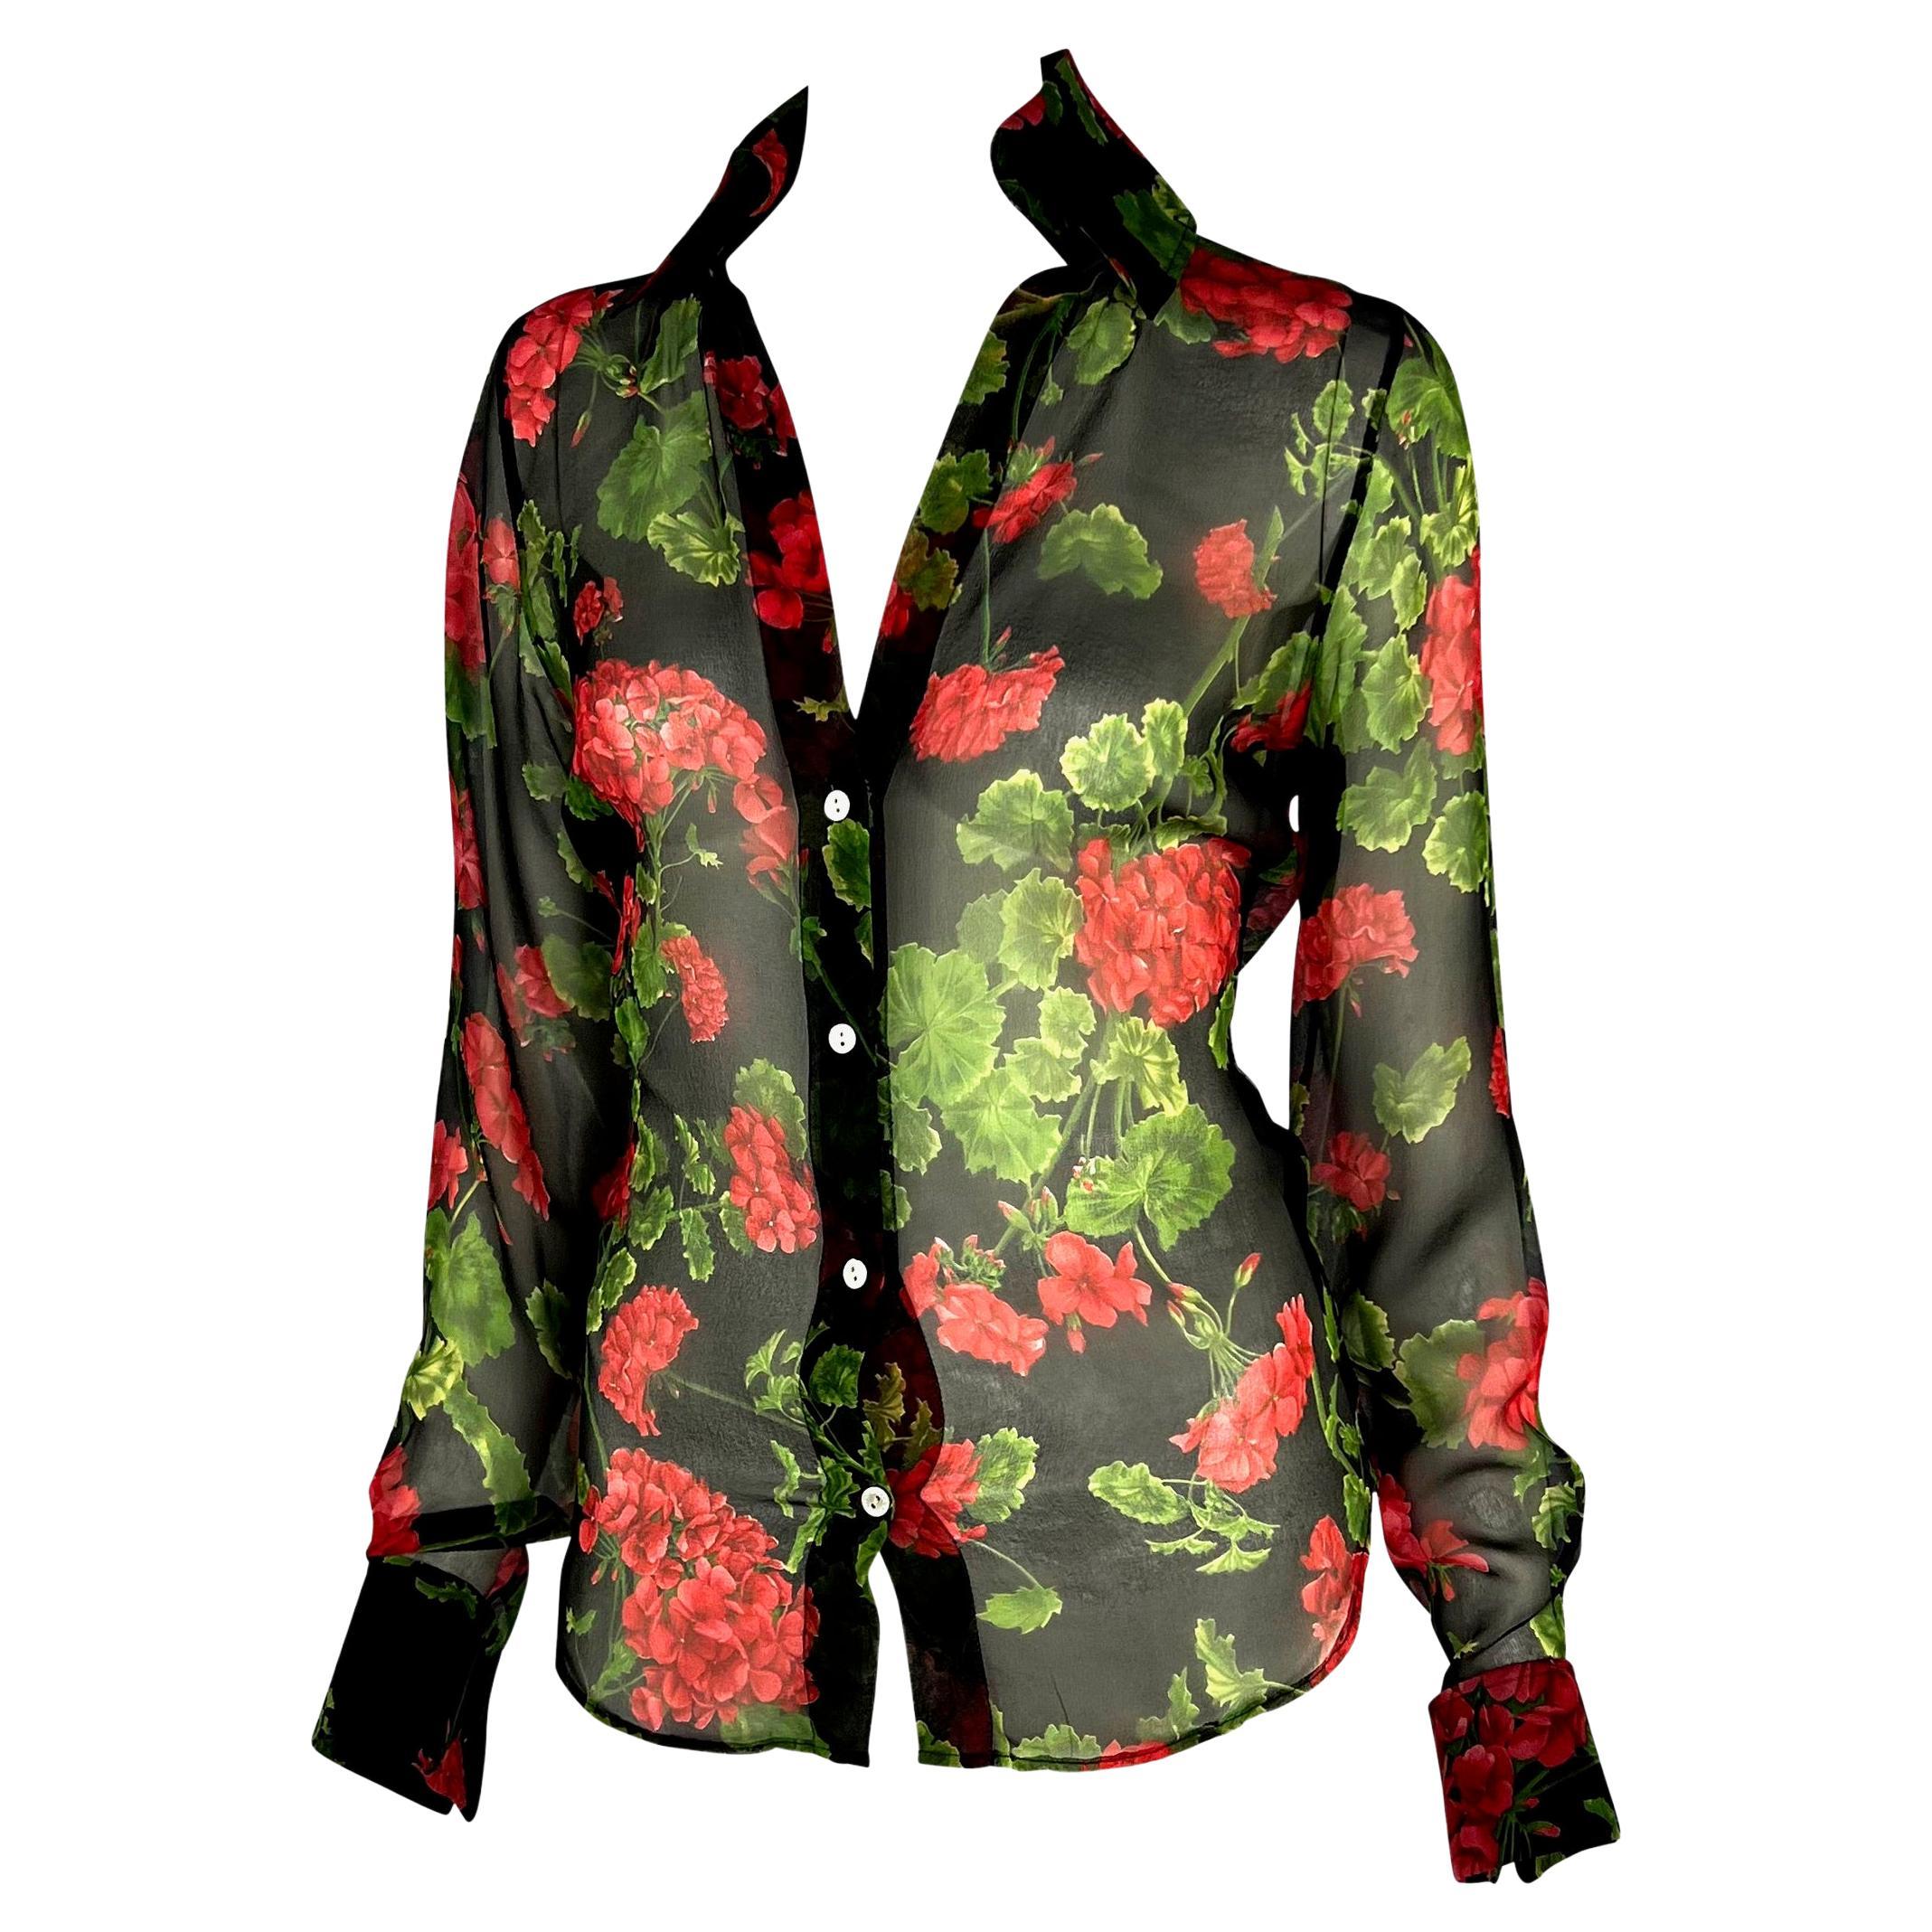 Ich präsentiere ein durchsichtiges, geblümtes Hemd von Dolce & Gabbana mit Knopfleiste. Dieses halbtransparente Hemd aus der Frühjahr/Sommer-Kollektion 2000 ist mit roten Hortensien auf schwarzem Hintergrund verziert. Das Oberteil hat einen tiefen